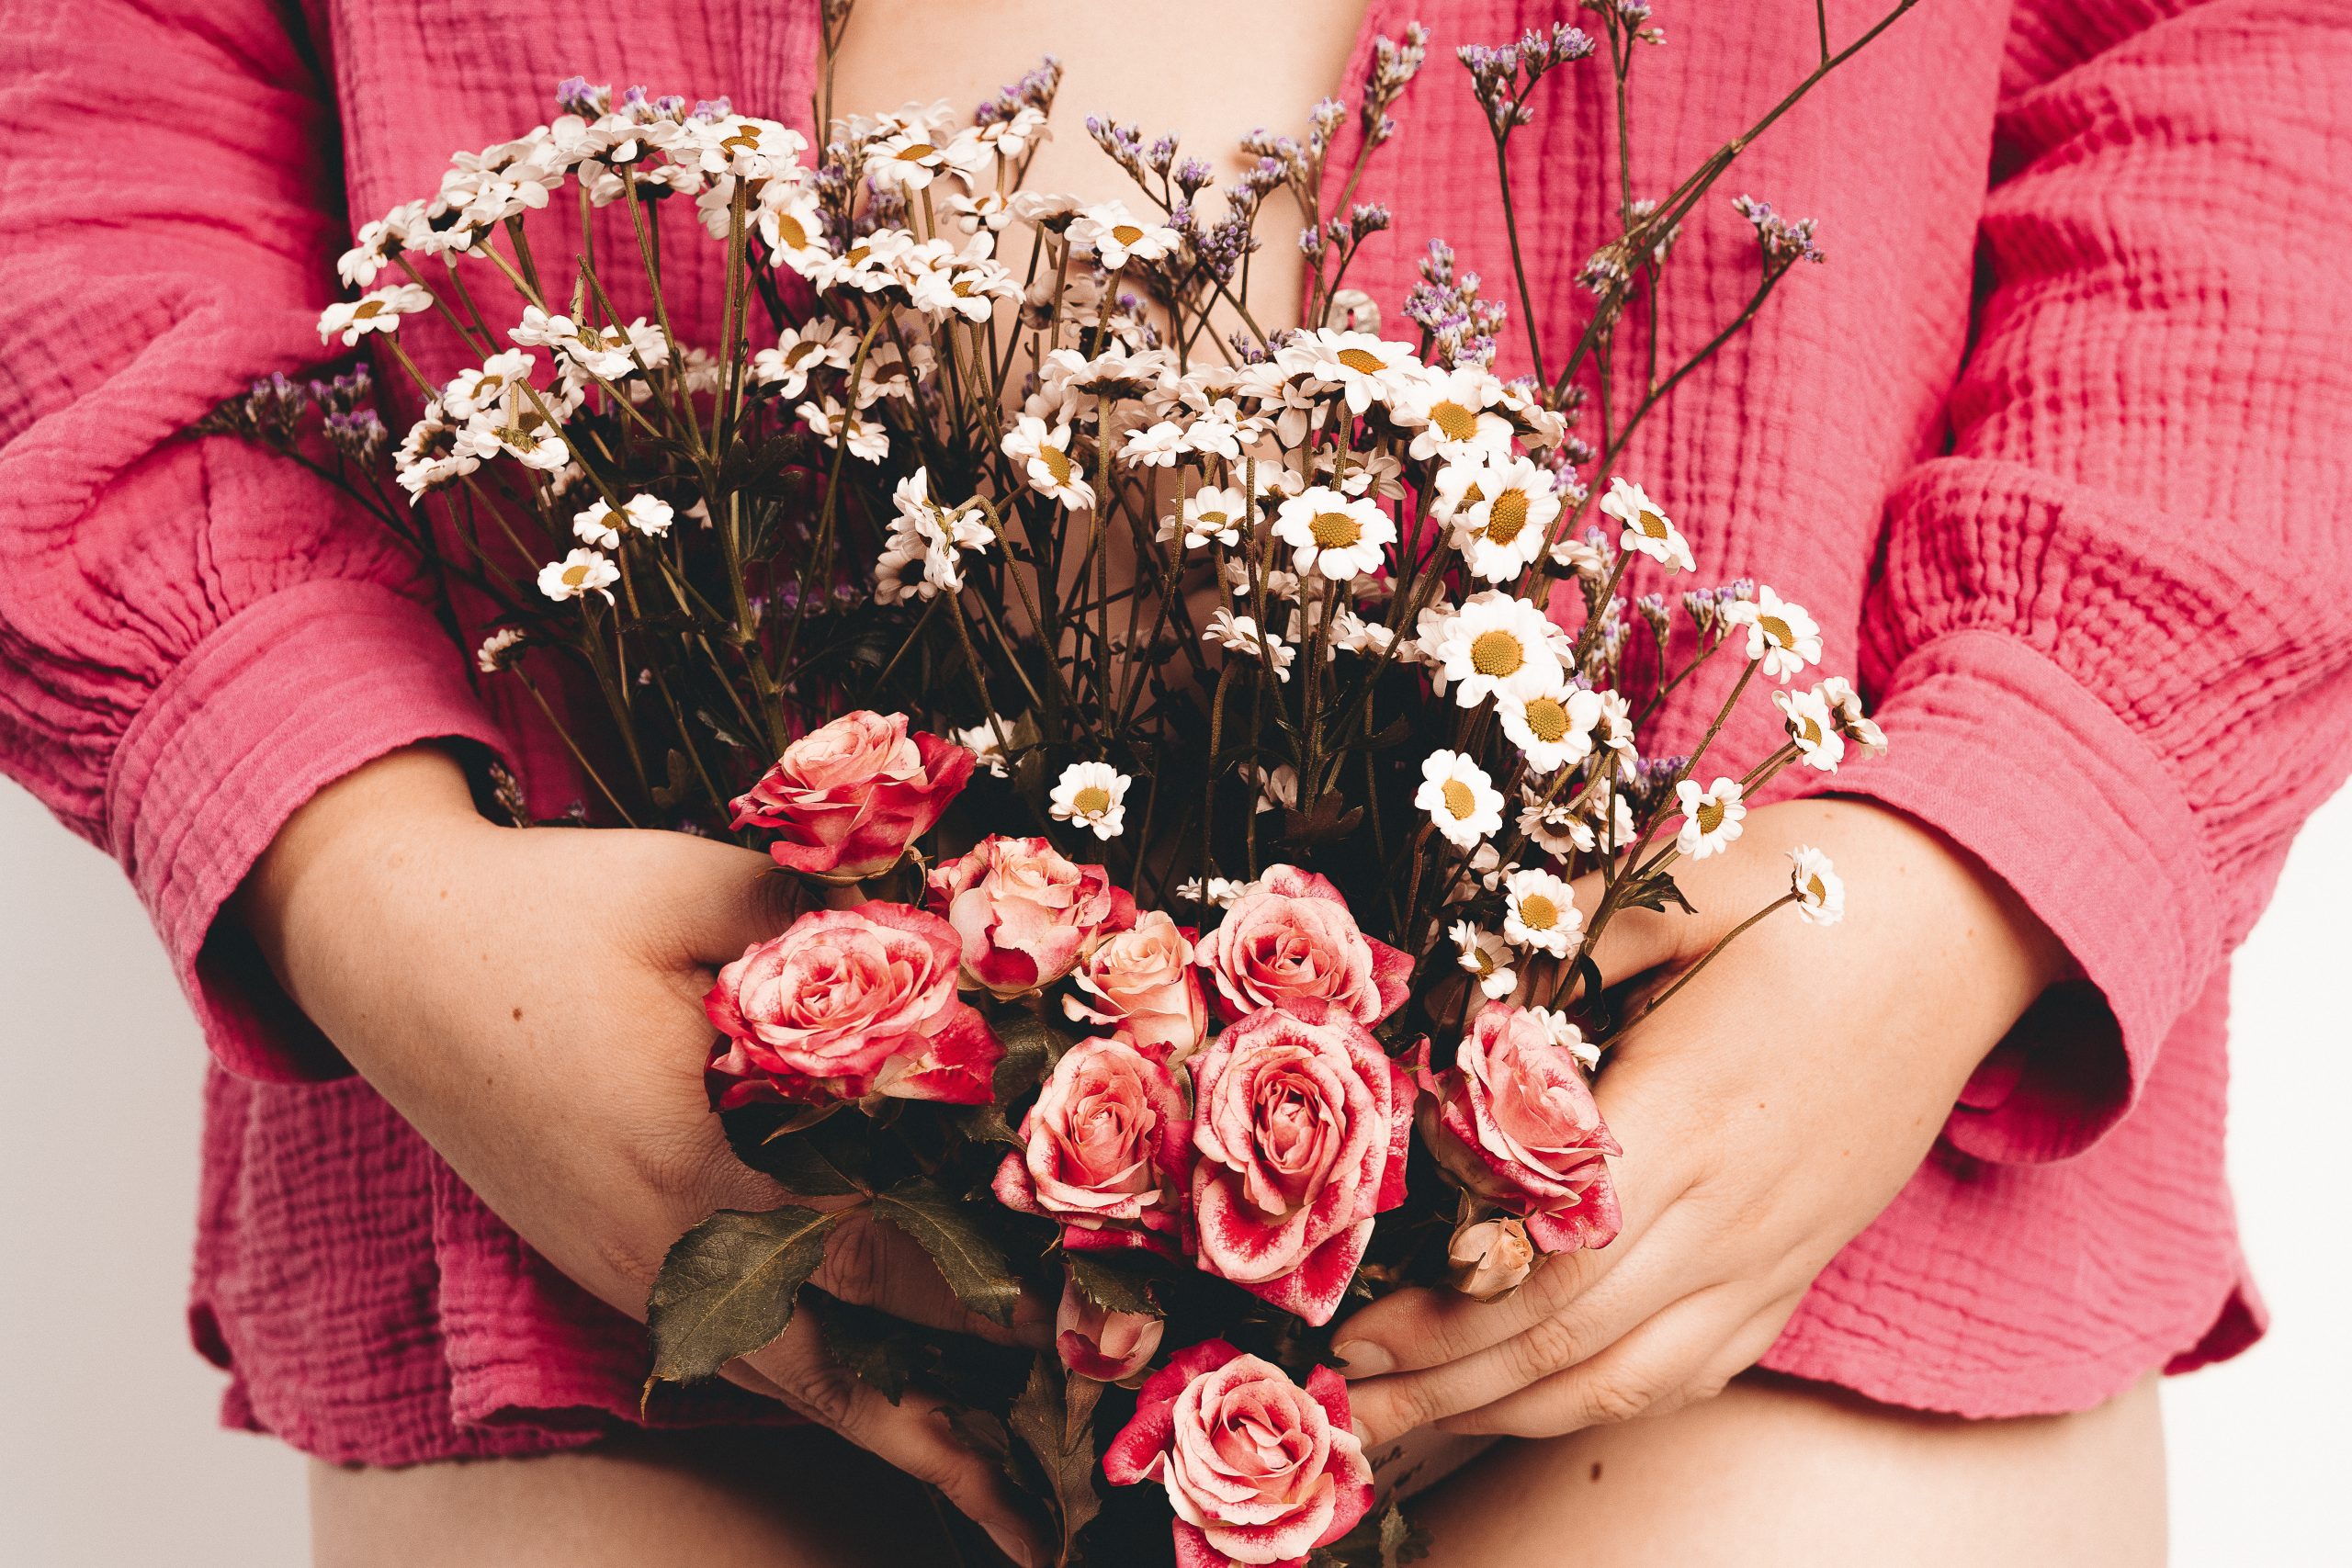 Frau in magentafarbenem Hemd hält Blumen vor ihrem Bauch und Intimsphäre